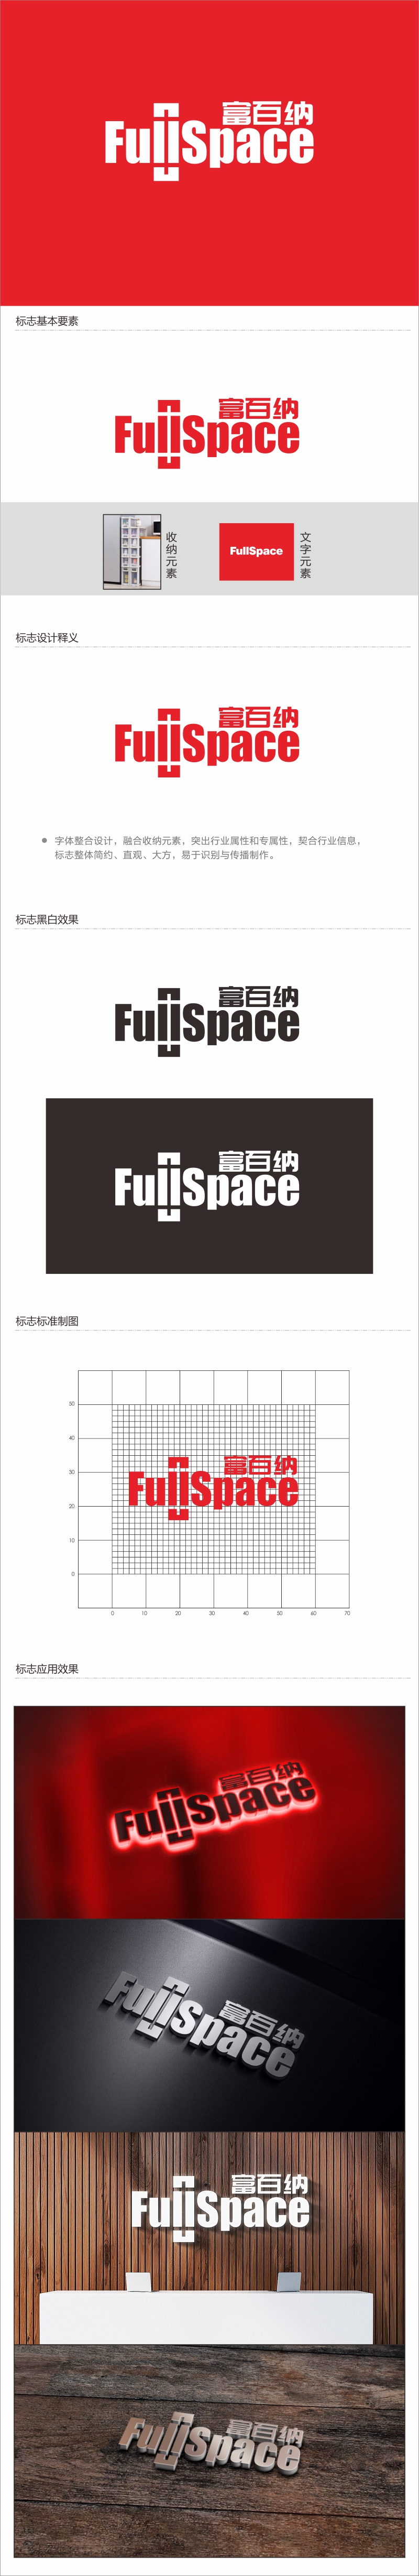 邓建平的FullSpace富百纳logo设计